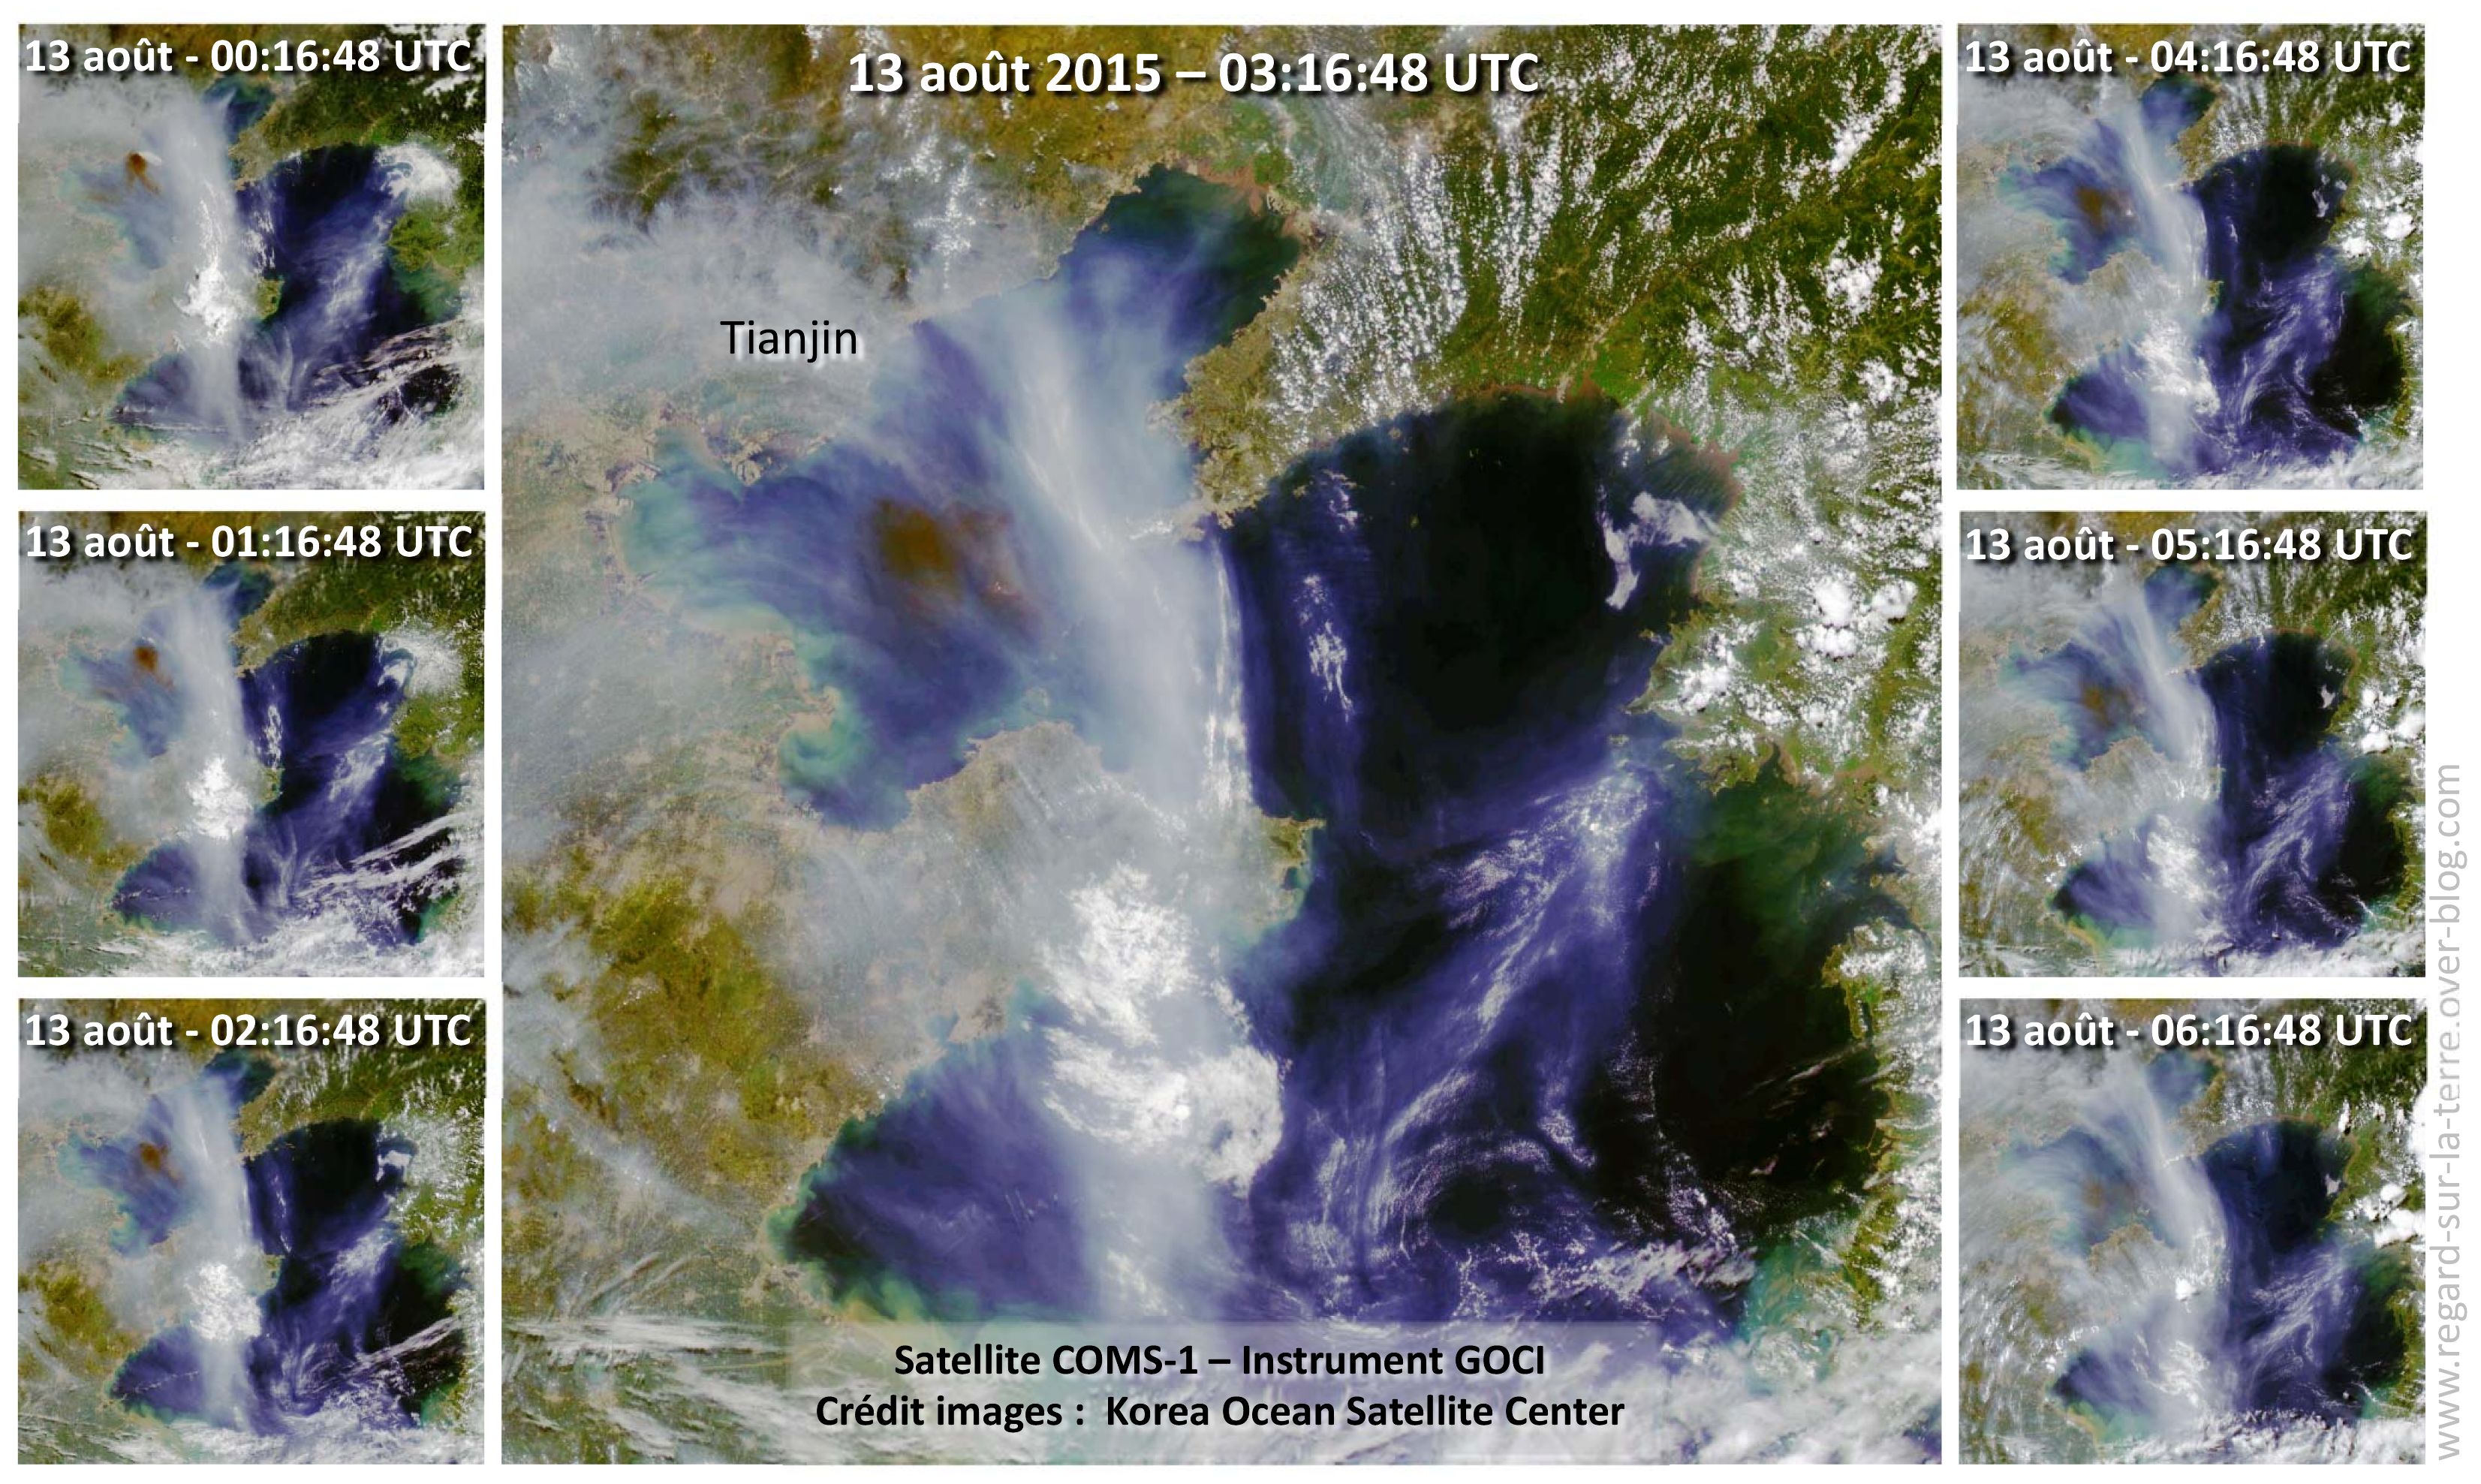 Explosion - Tianjin - Chine - Séquence d'images - Satellite COM-1 - Instrument GOCI - Propagation nuage de fumée noire - 7 images acquises le 13 août 2015 entre 00:16:48 et 06:16:48 UTC. Korea Ocean Satellite Center (KOSC).